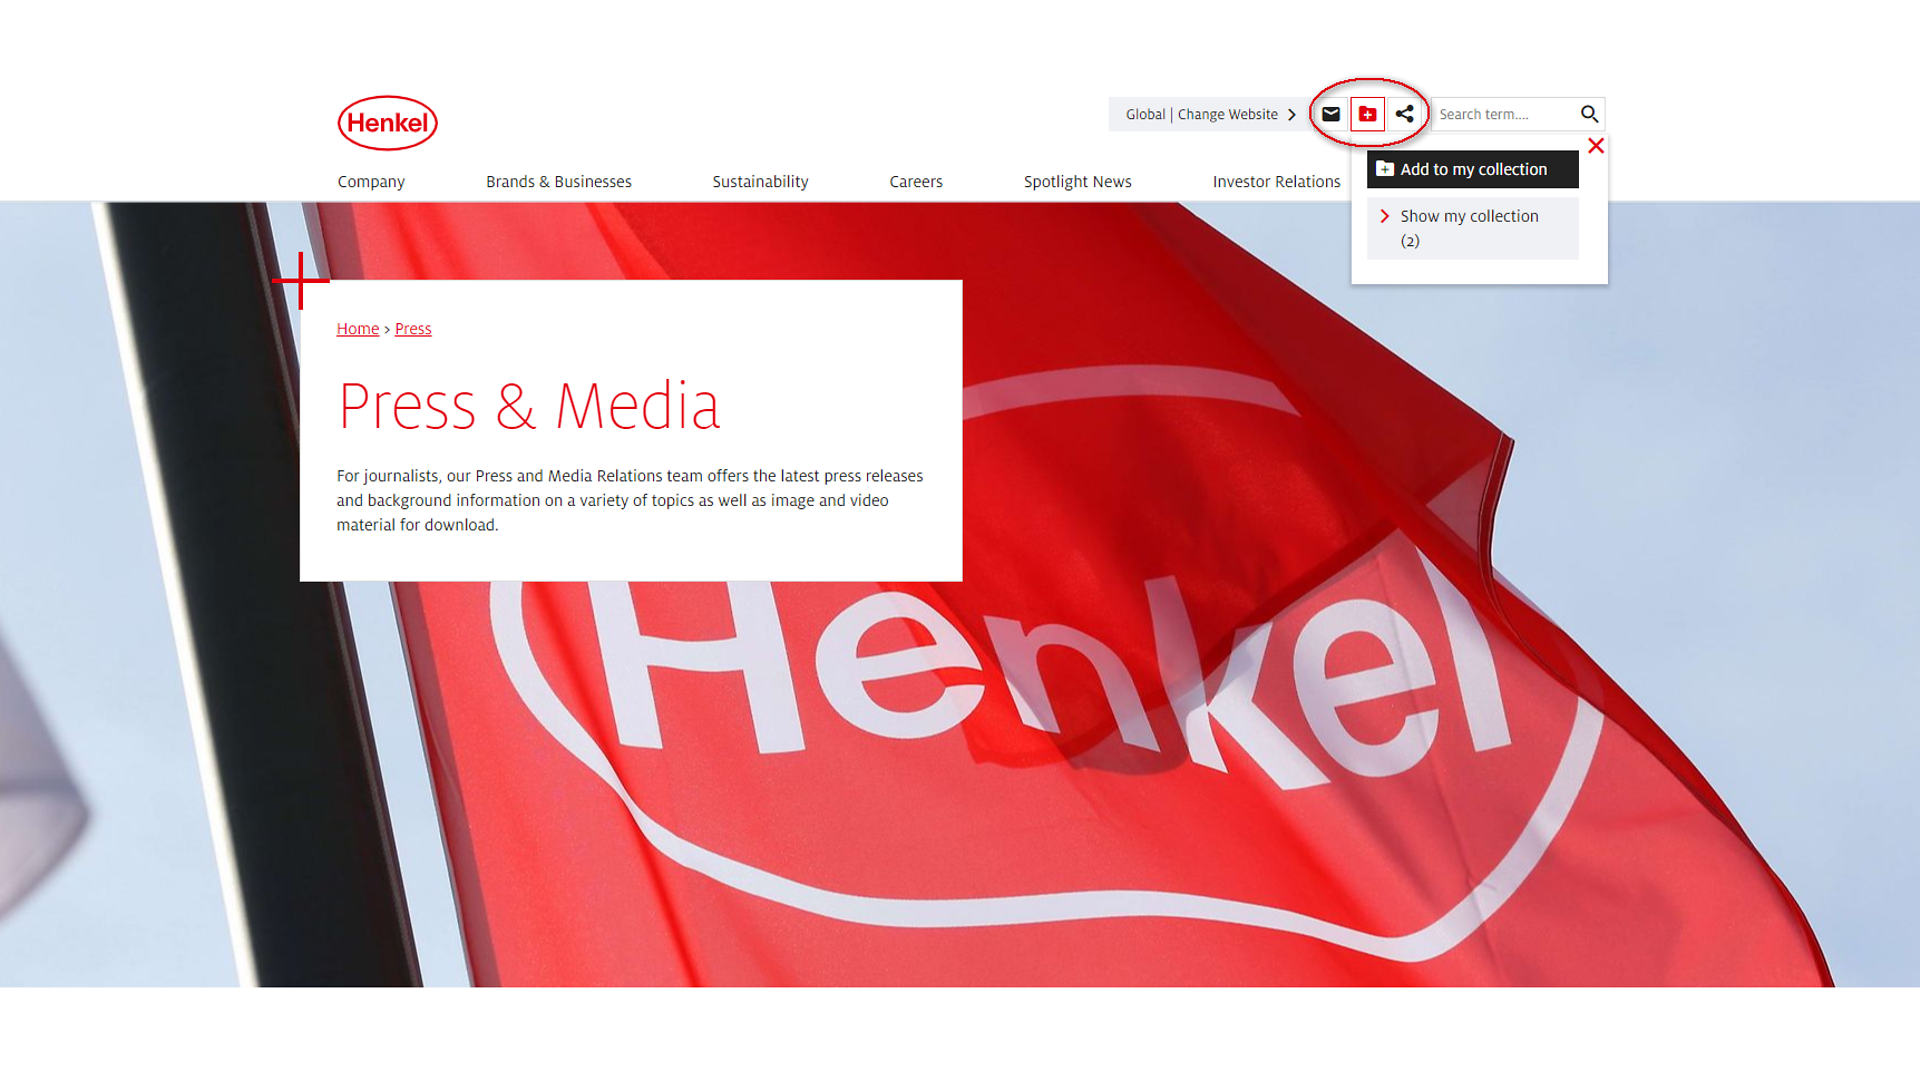 
Enquanto navega no site da Henkel, utilize o ícone 